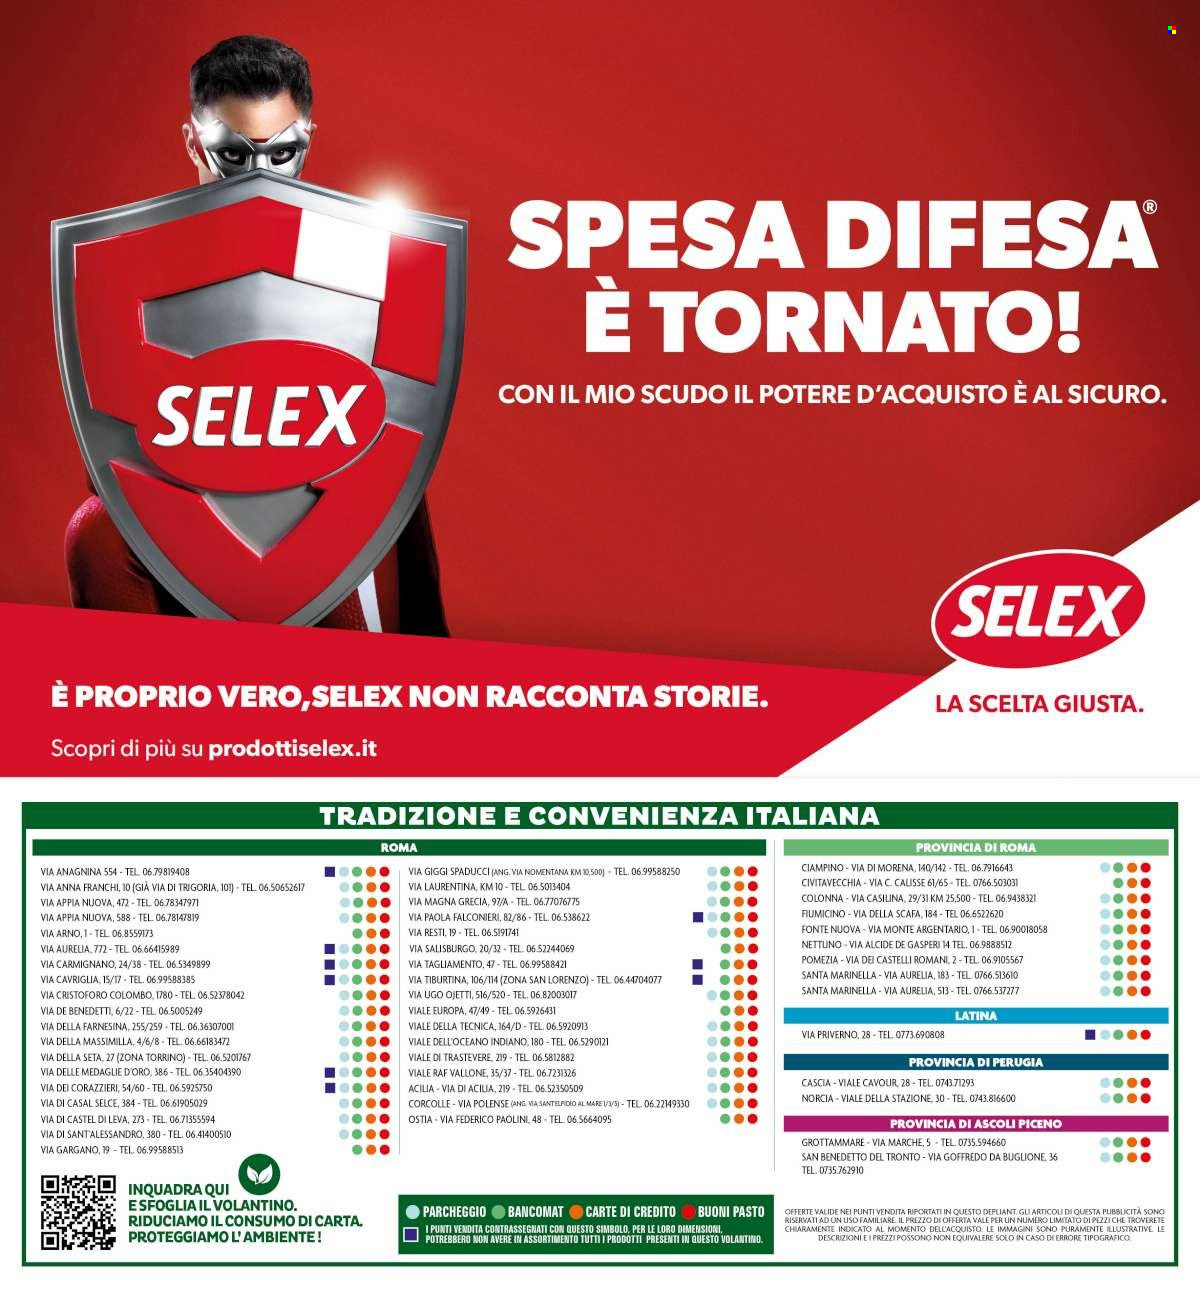 Volantino Elite Supermercati - 20.3.2023 - 29.3.2023.